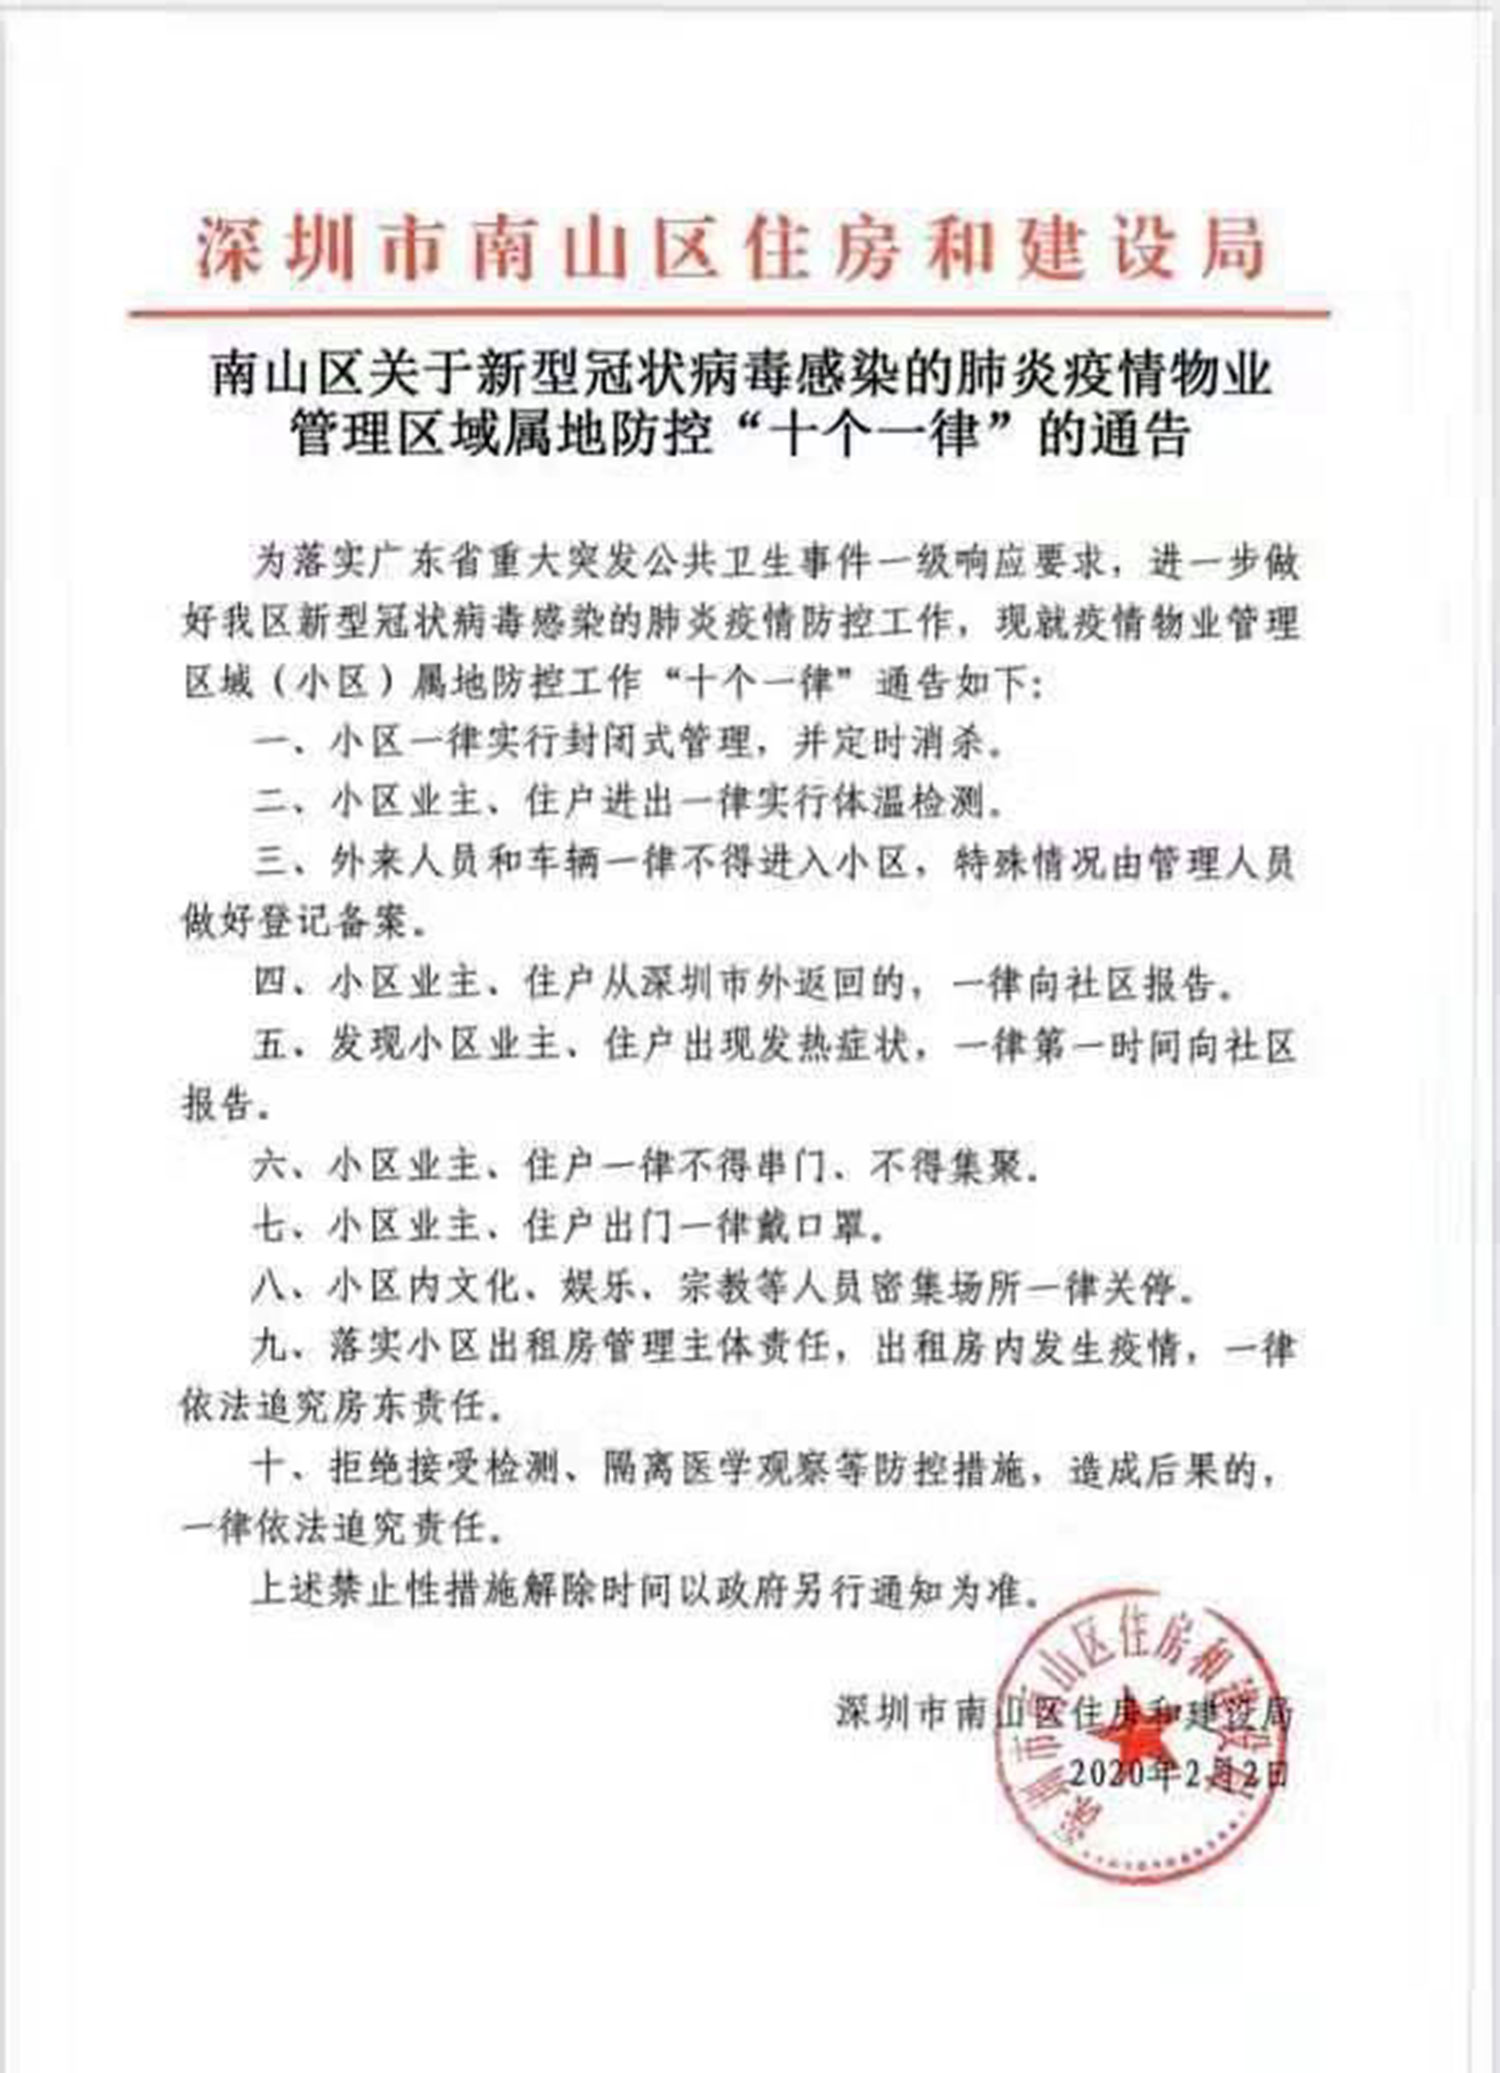 封南京宁波福州等27城 公安部指令“严打”敌对势力(图)